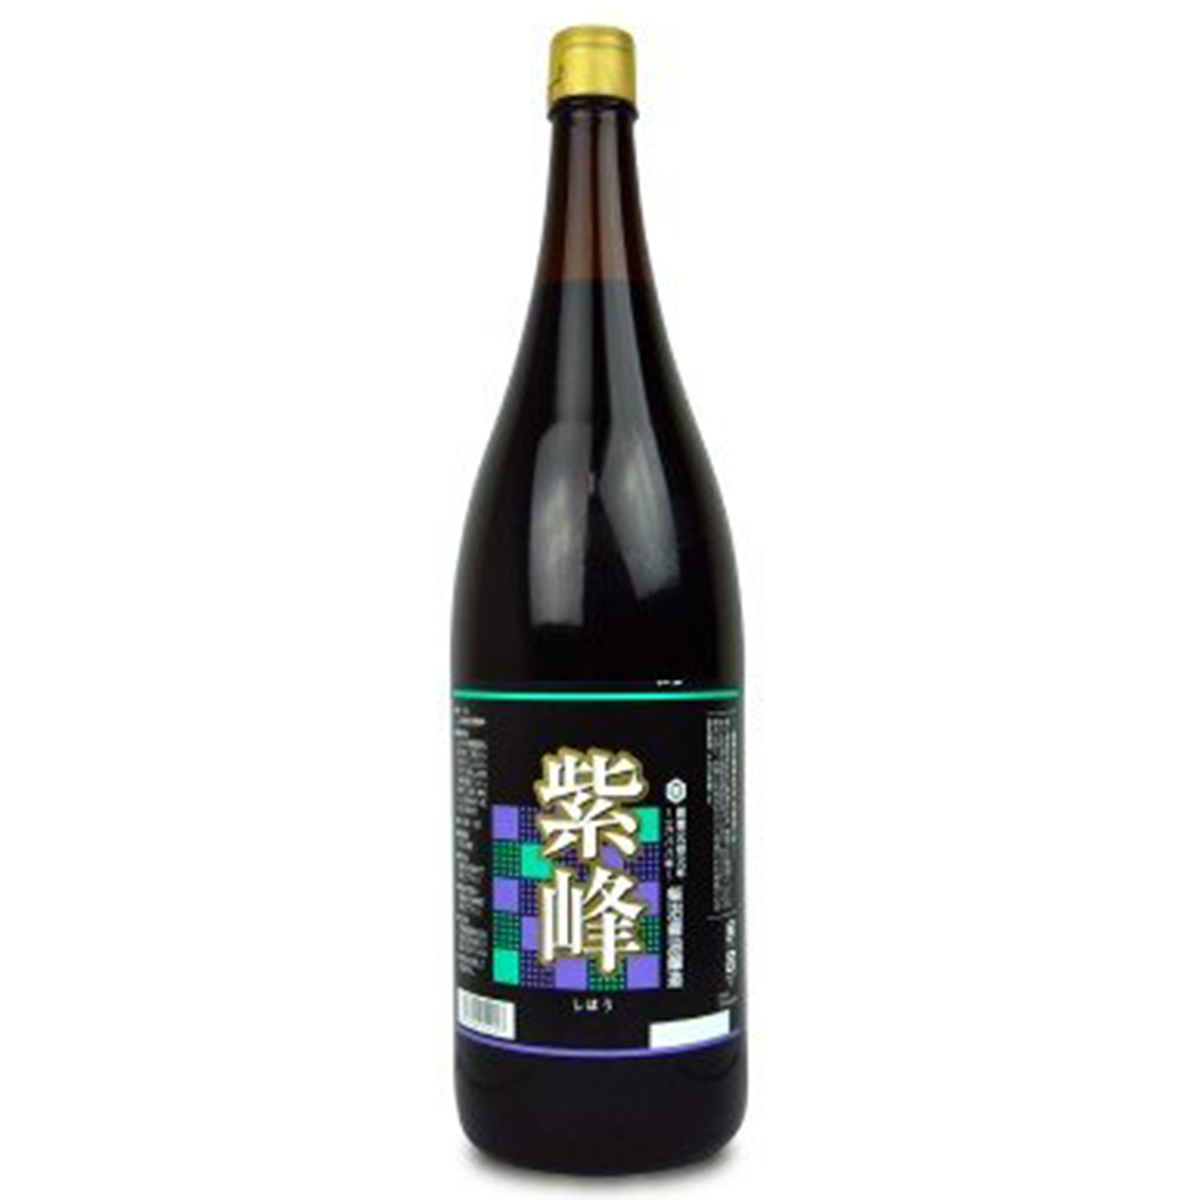 柴沼醤油醸造 紫峰 瓶 1.8L×6本の商品画像